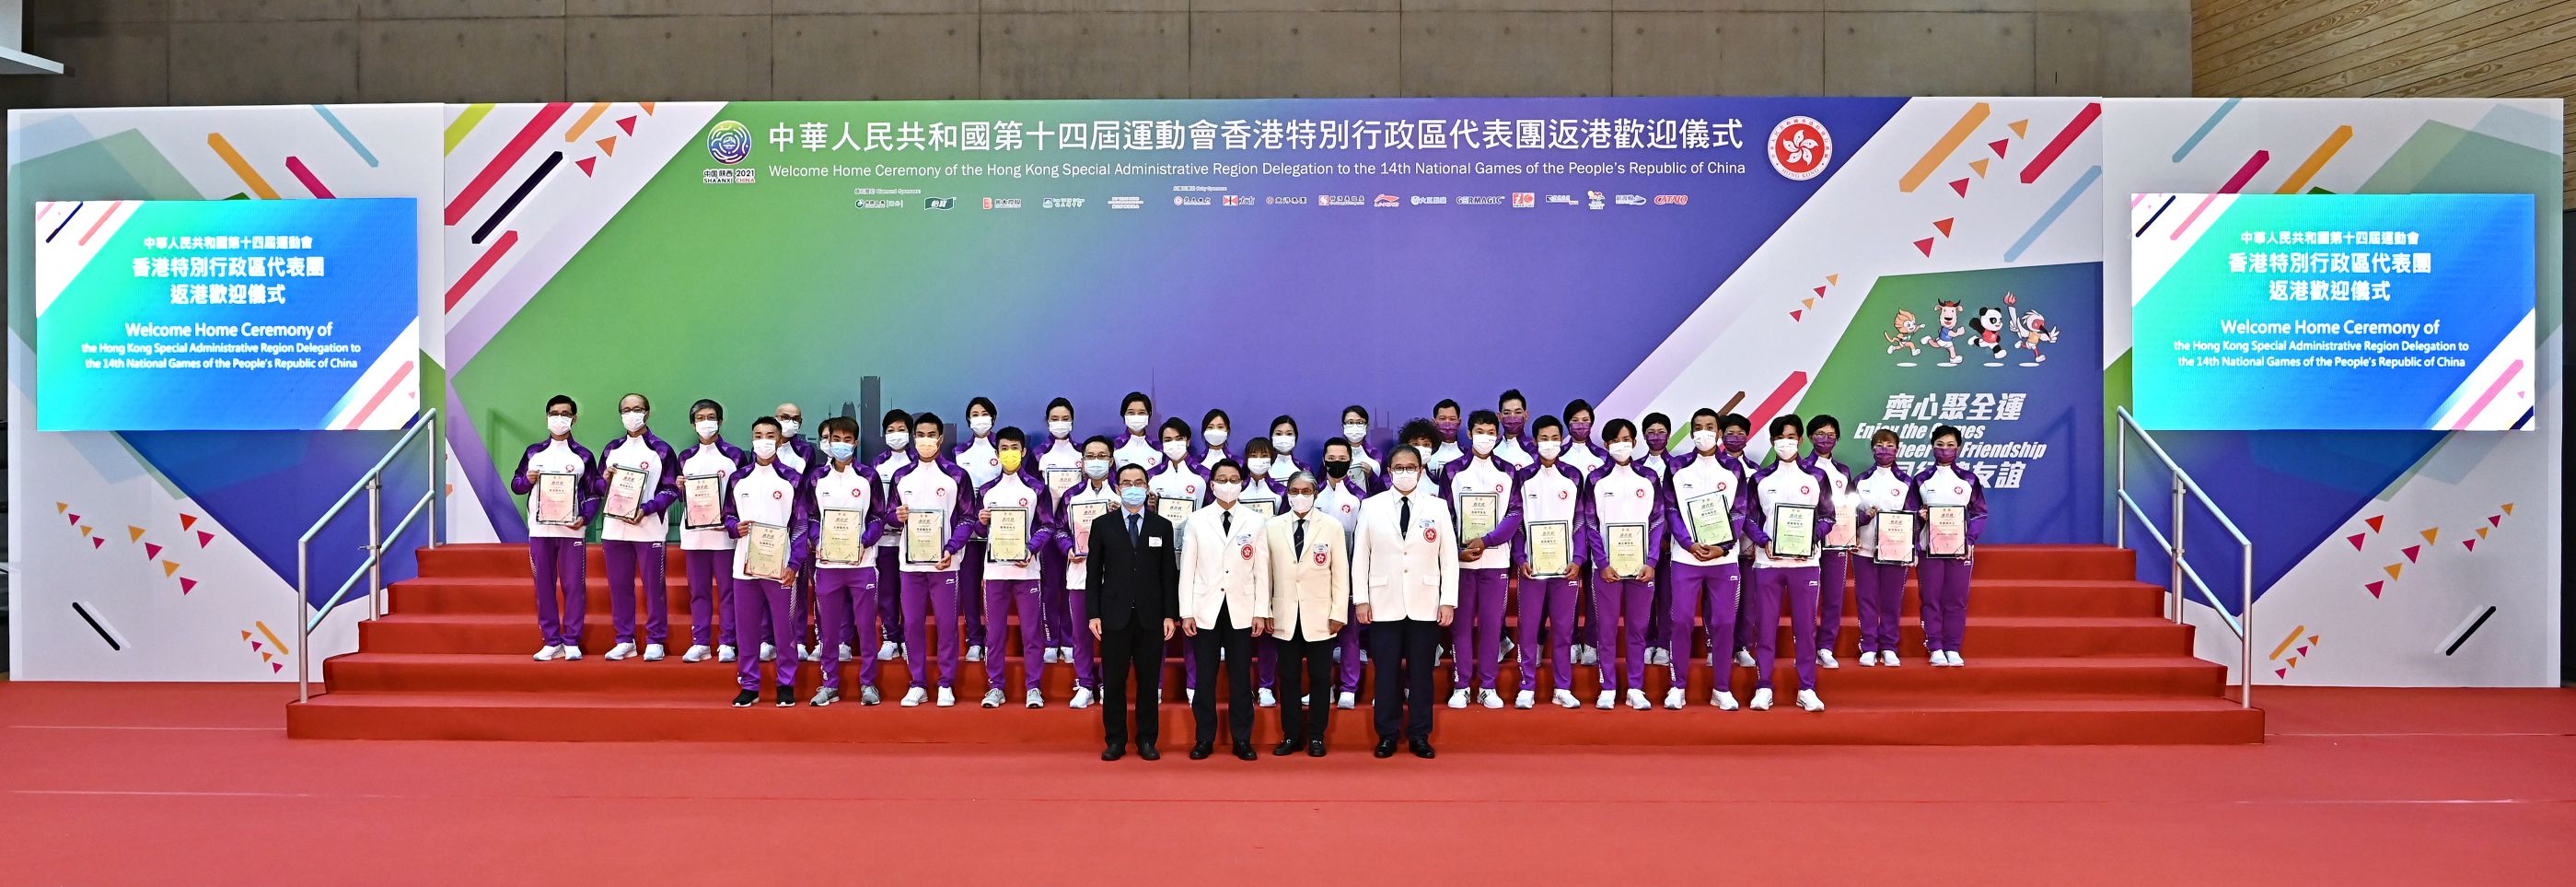 出席嘉宾于返港欢迎仪式与第十四届全国运动会香港特区运动员合照